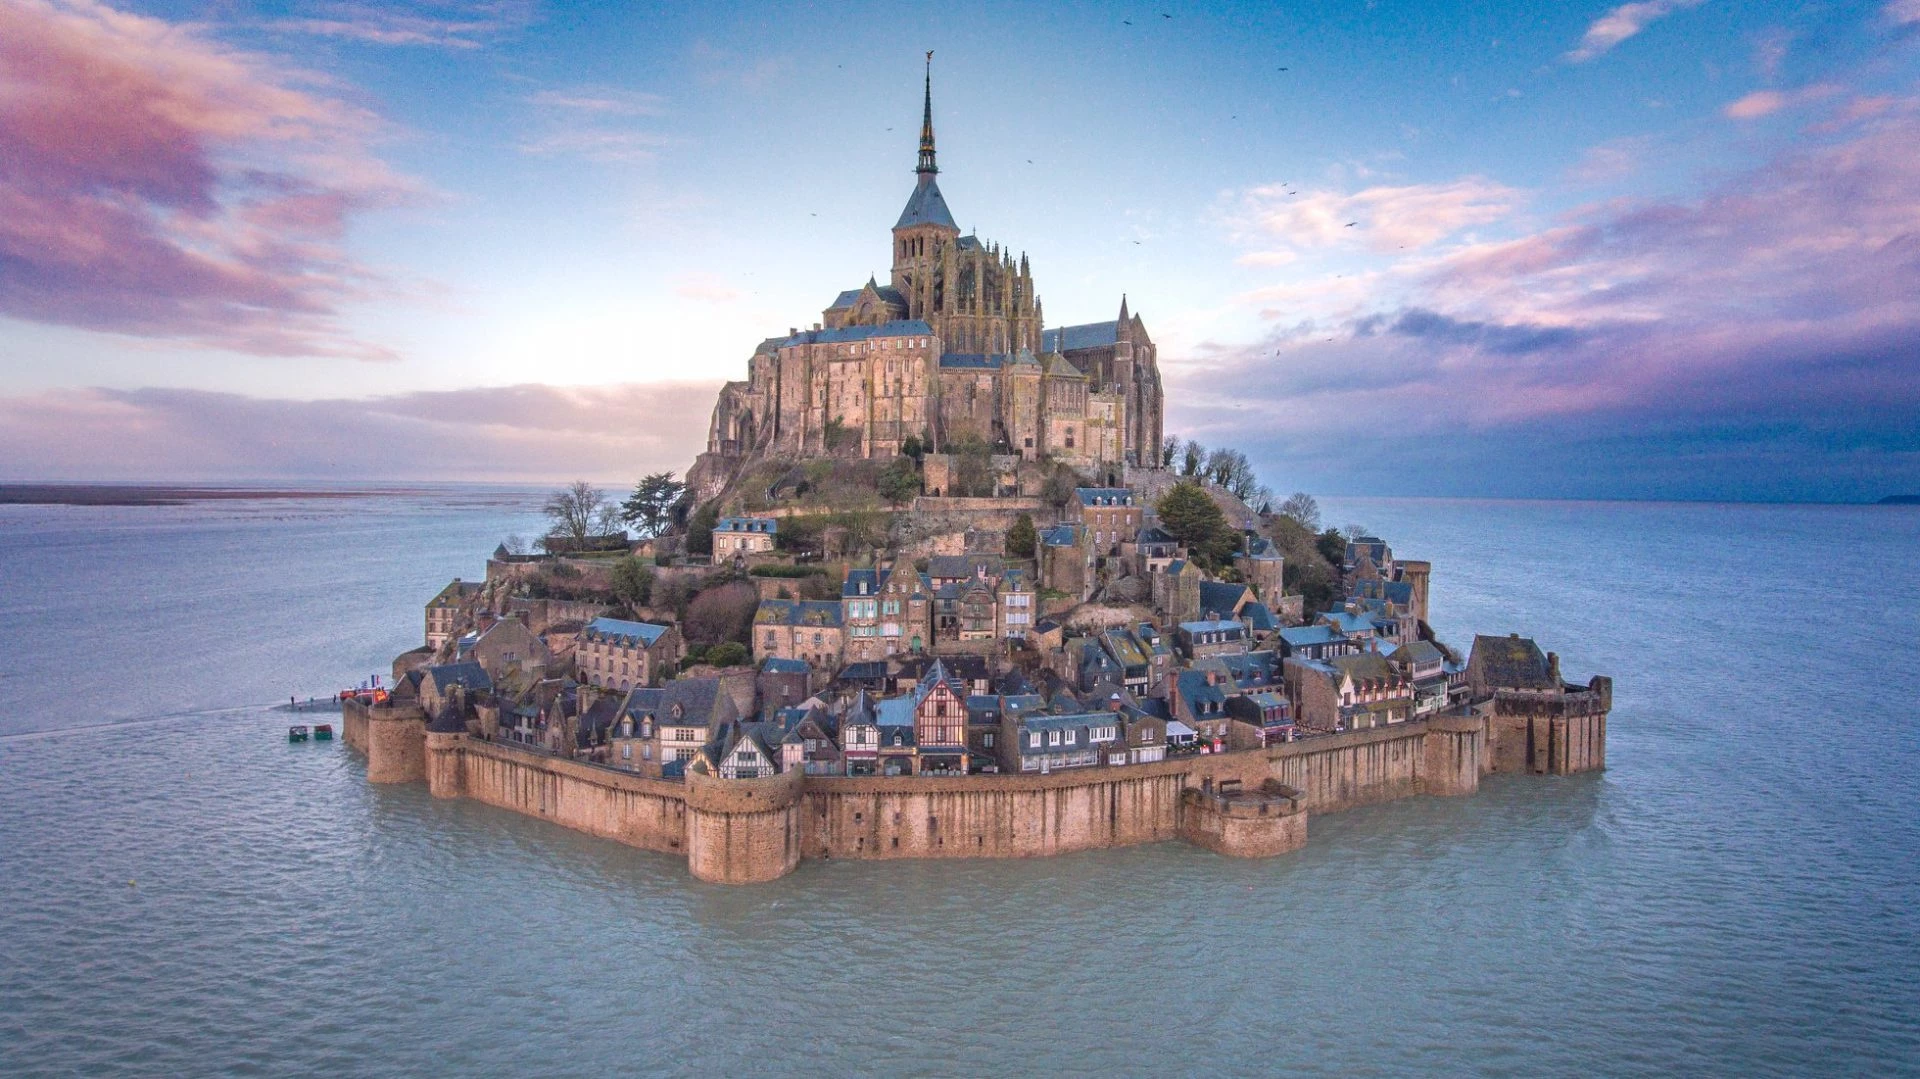 Mont Saint Michel (Normandy, Pháp): Nằm trên hòn đảo ngoài khơi Normandy, lâu đài này thu hút hơn 3 triệu lượt khách mỗi năm. Khi thủy triều dâng cao, toàn bộ khu vực xung quanh ngập nước, tạo ra khung cảnh kỳ diệu và độc đáo. Ảnh: Big Seven Travel.